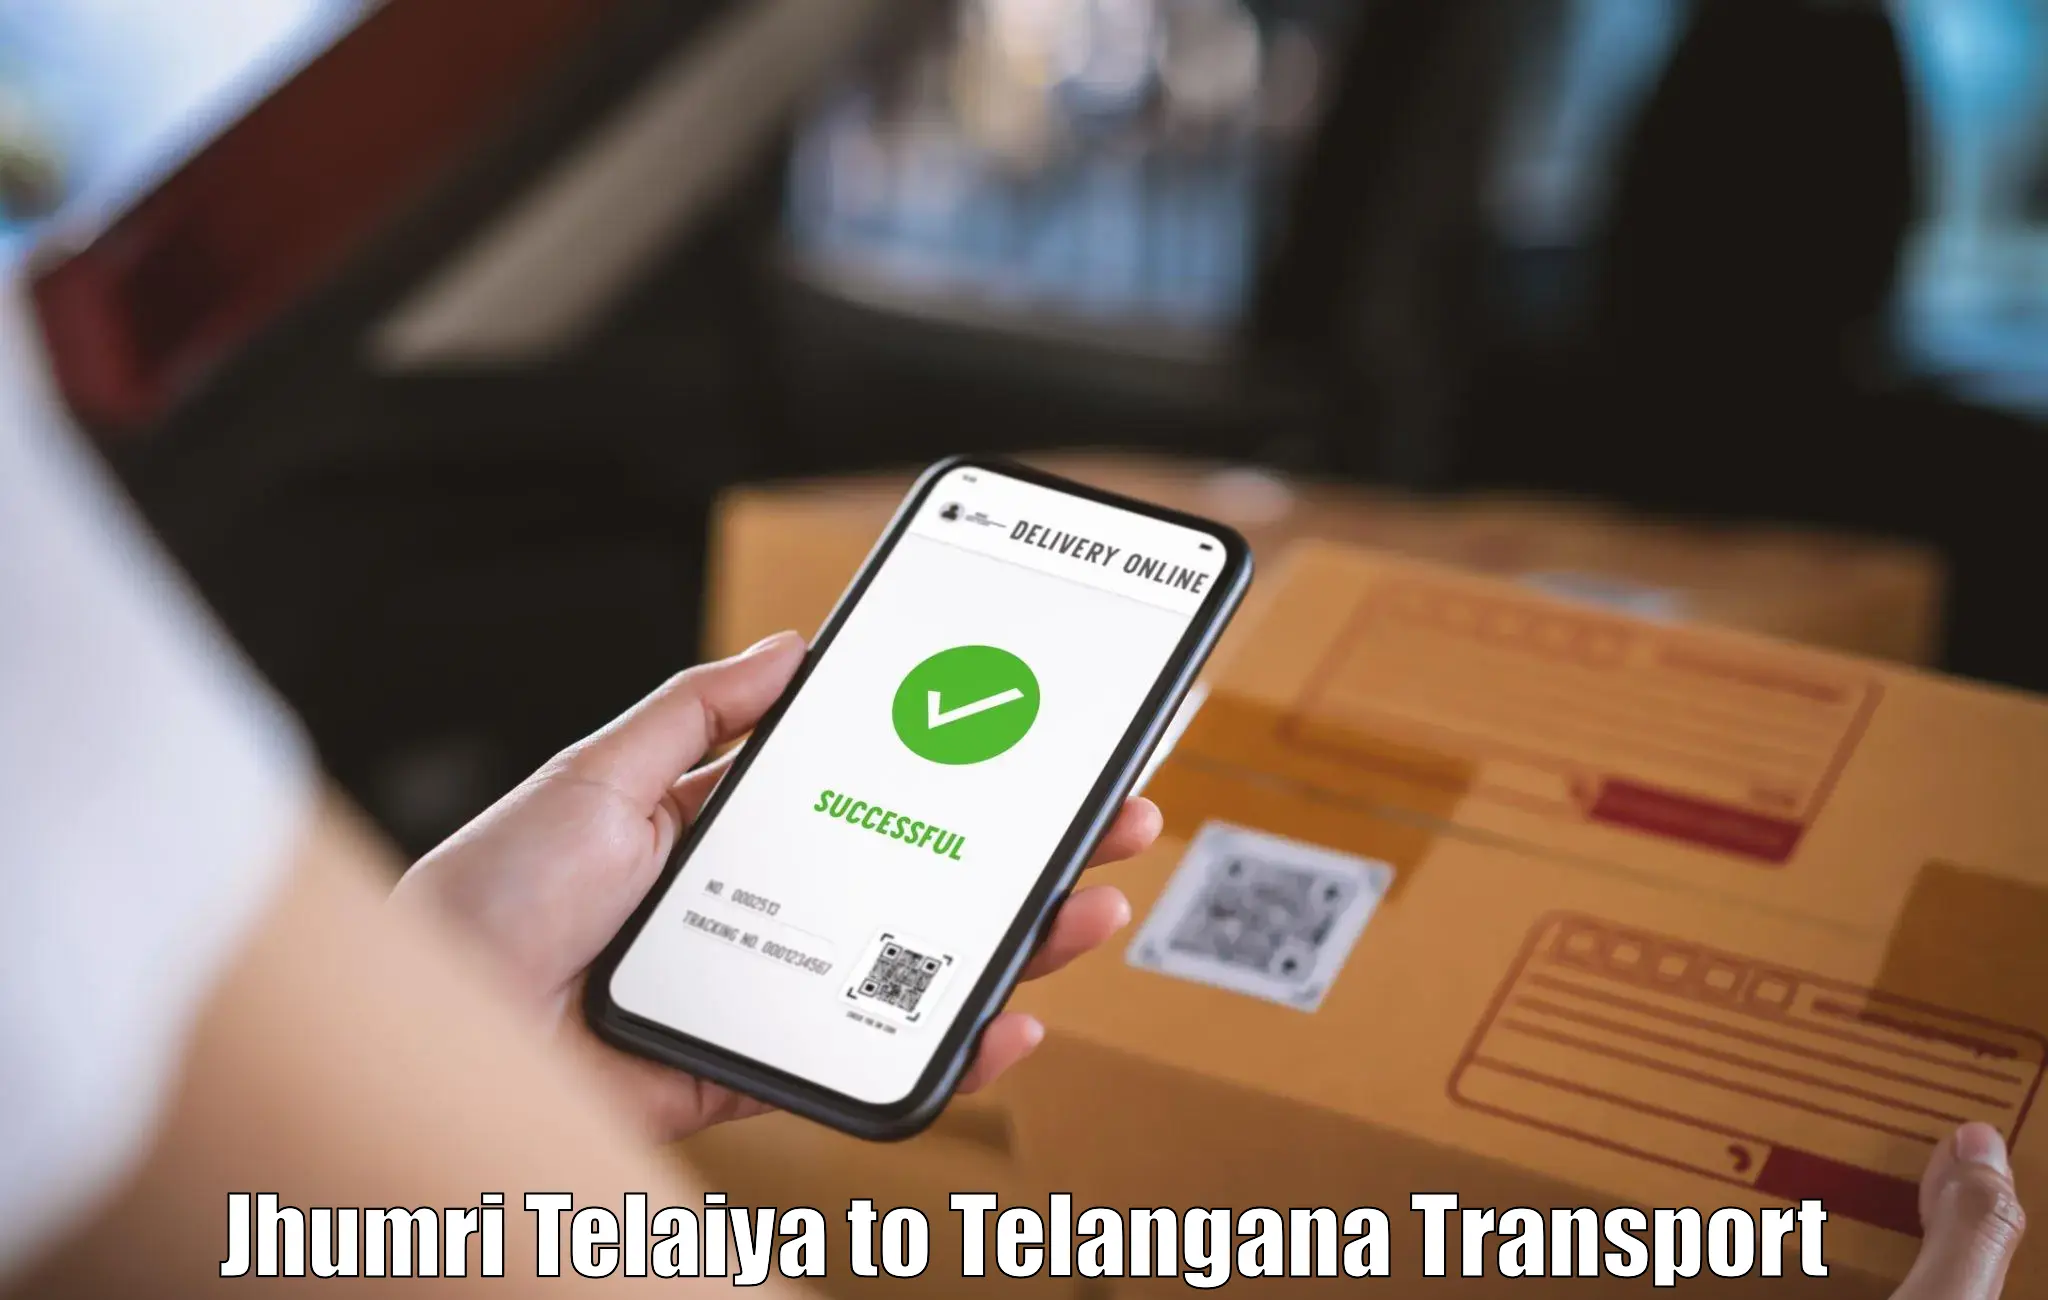 Shipping services Jhumri Telaiya to Bhainsa